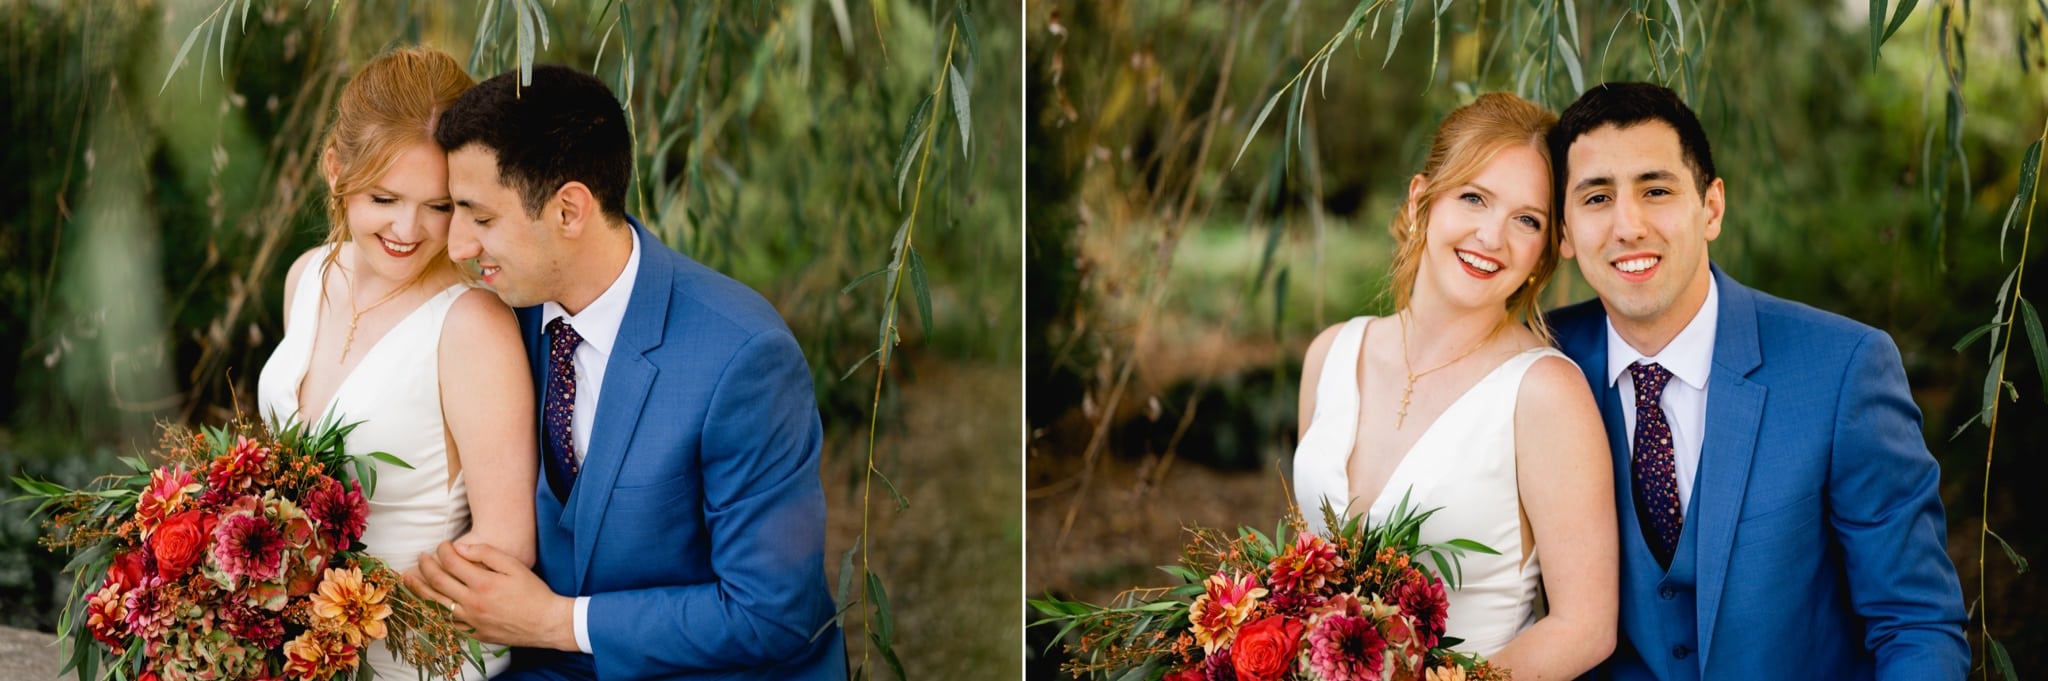 Des Moines Botanical Garden wedding photography